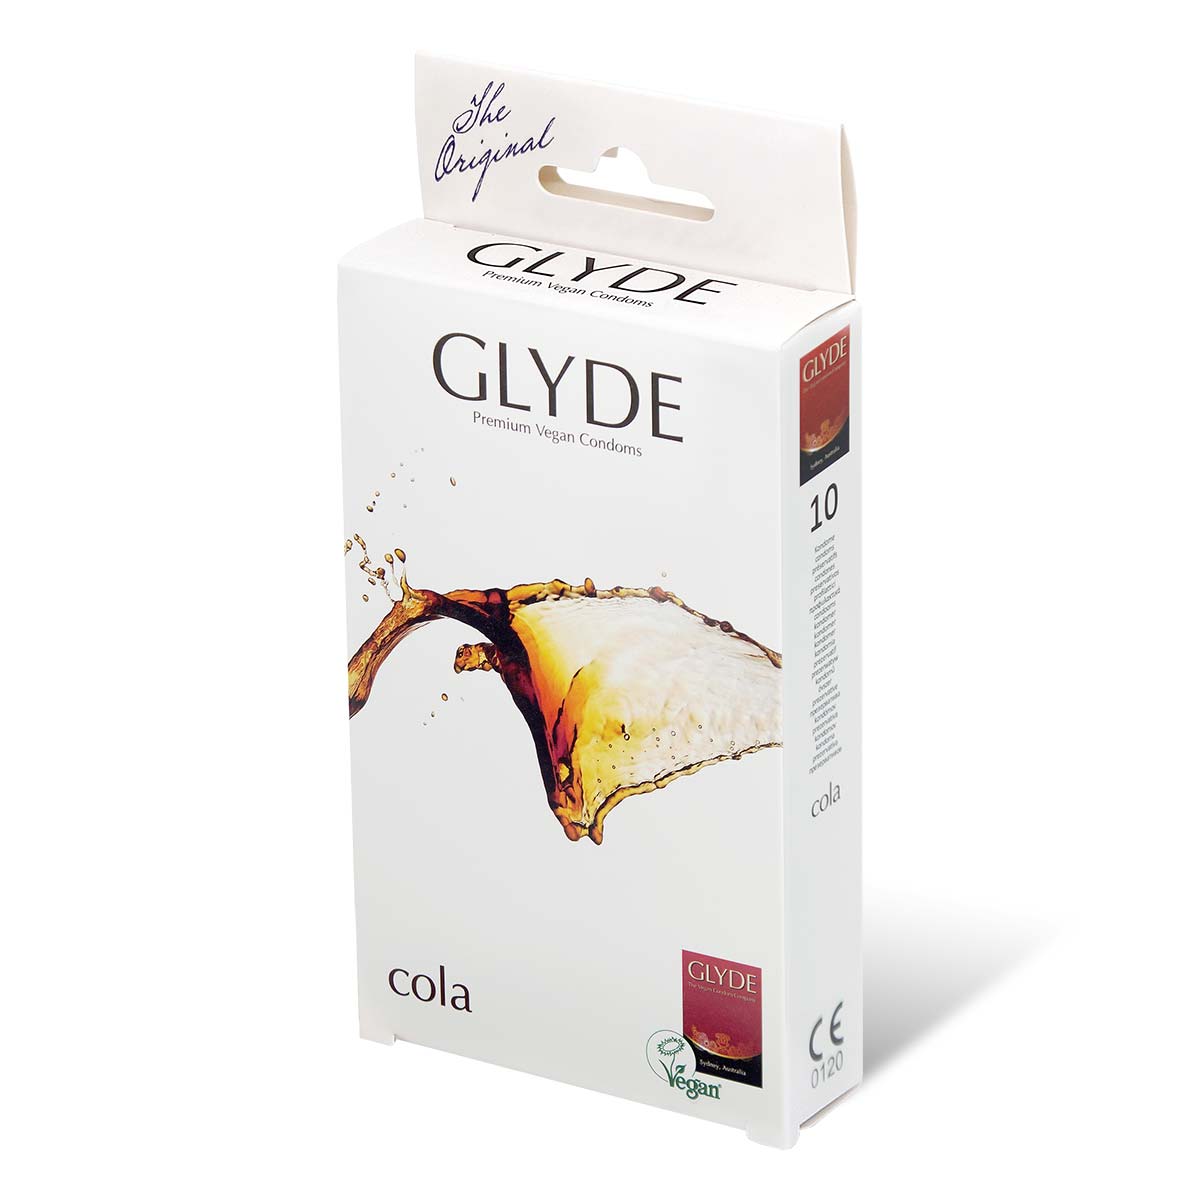 Glyde 格蕾迪 素食主义安全套 可乐香 10 片装 乳胶安全套-p_1